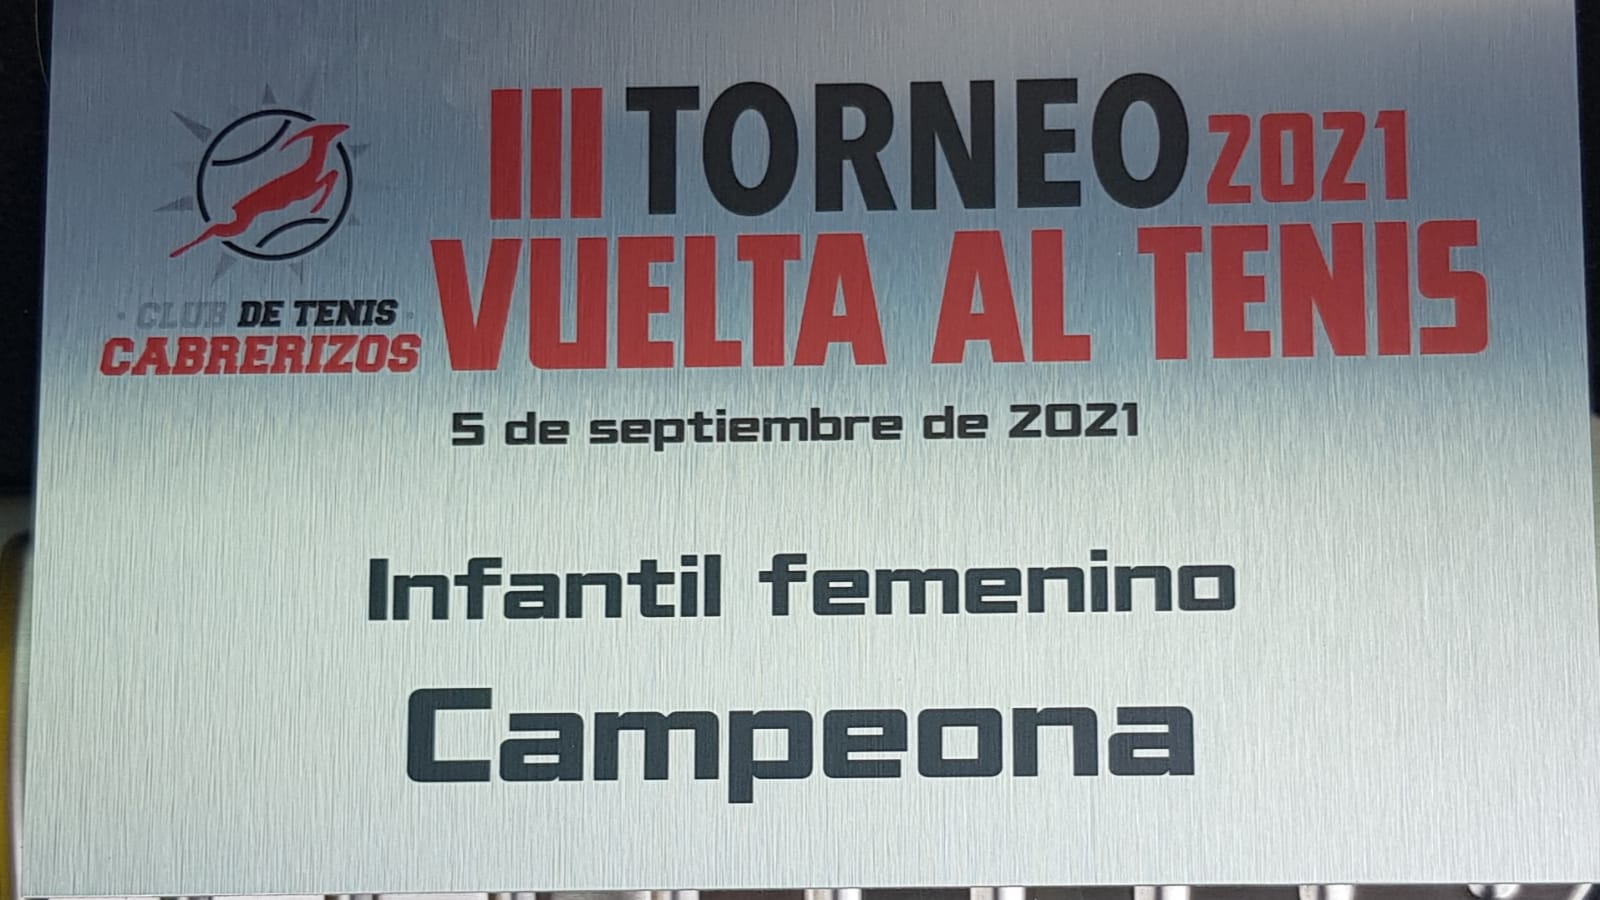  cartel III Torneo 2021 Vuelta al Tenis